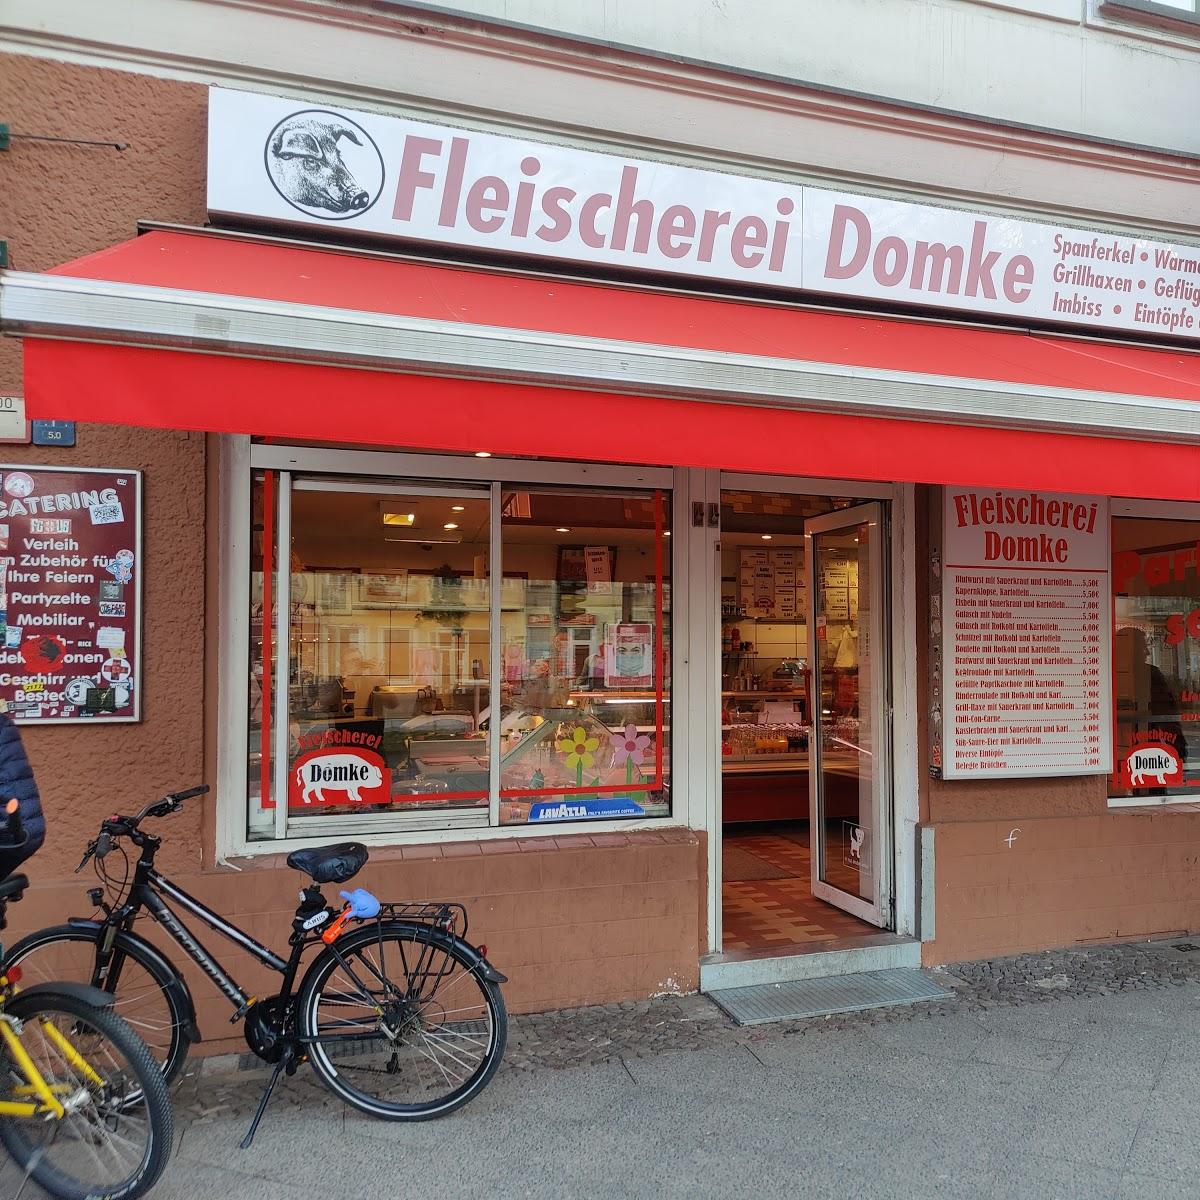 Restaurant "Domke Nino Fleischerei" in Berlin